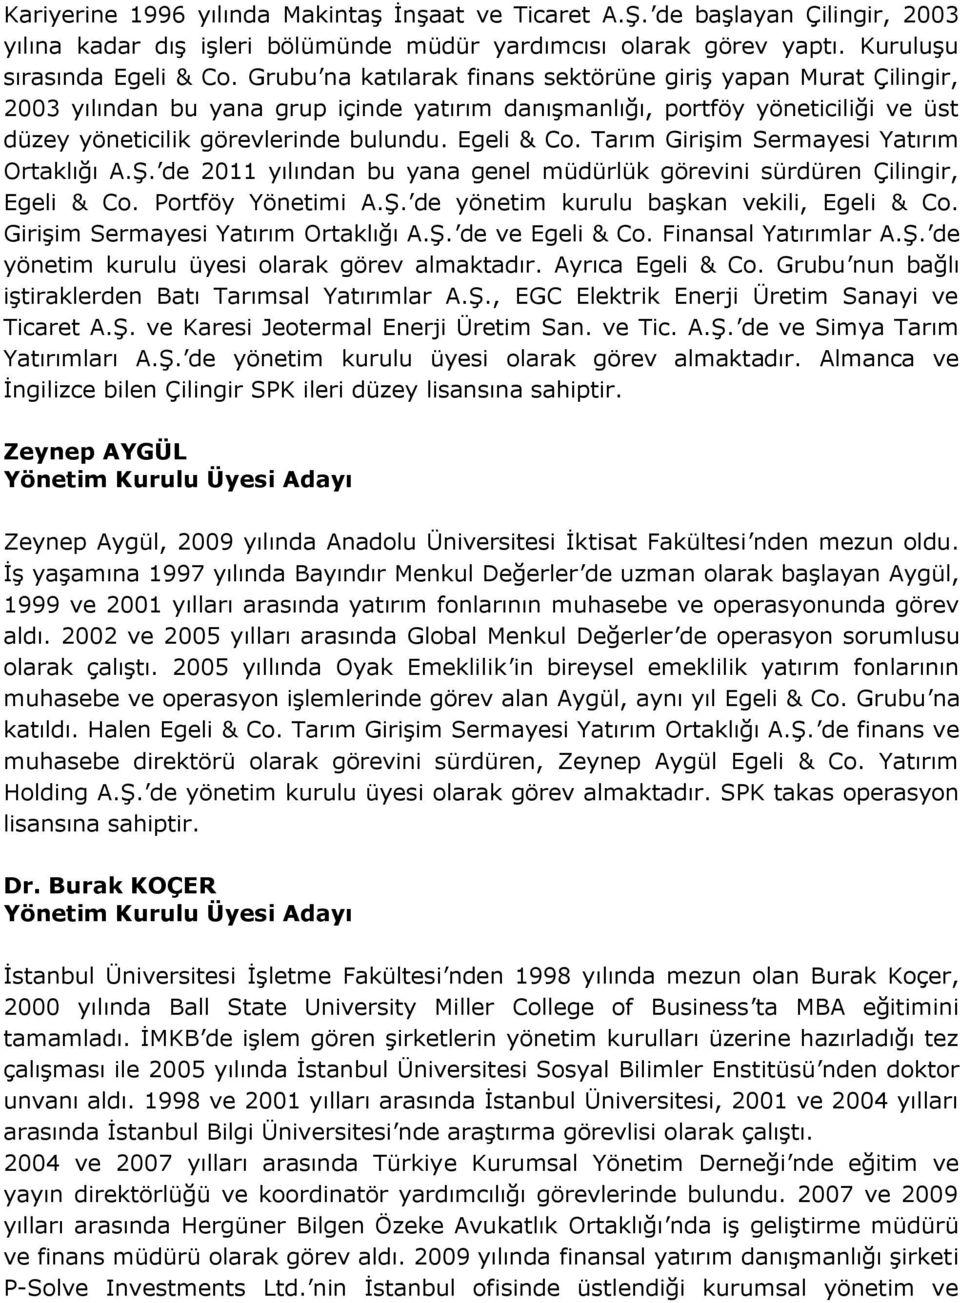 Tarım Girişim Sermayesi Yatırım Ortaklığı A.Ş. de 2011 yılından bu yana genel müdürlük görevini sürdüren Çilingir, Egeli & Co. Portföy Yönetimi A.Ş. de yönetim kurulu başkan vekili, Egeli & Co.